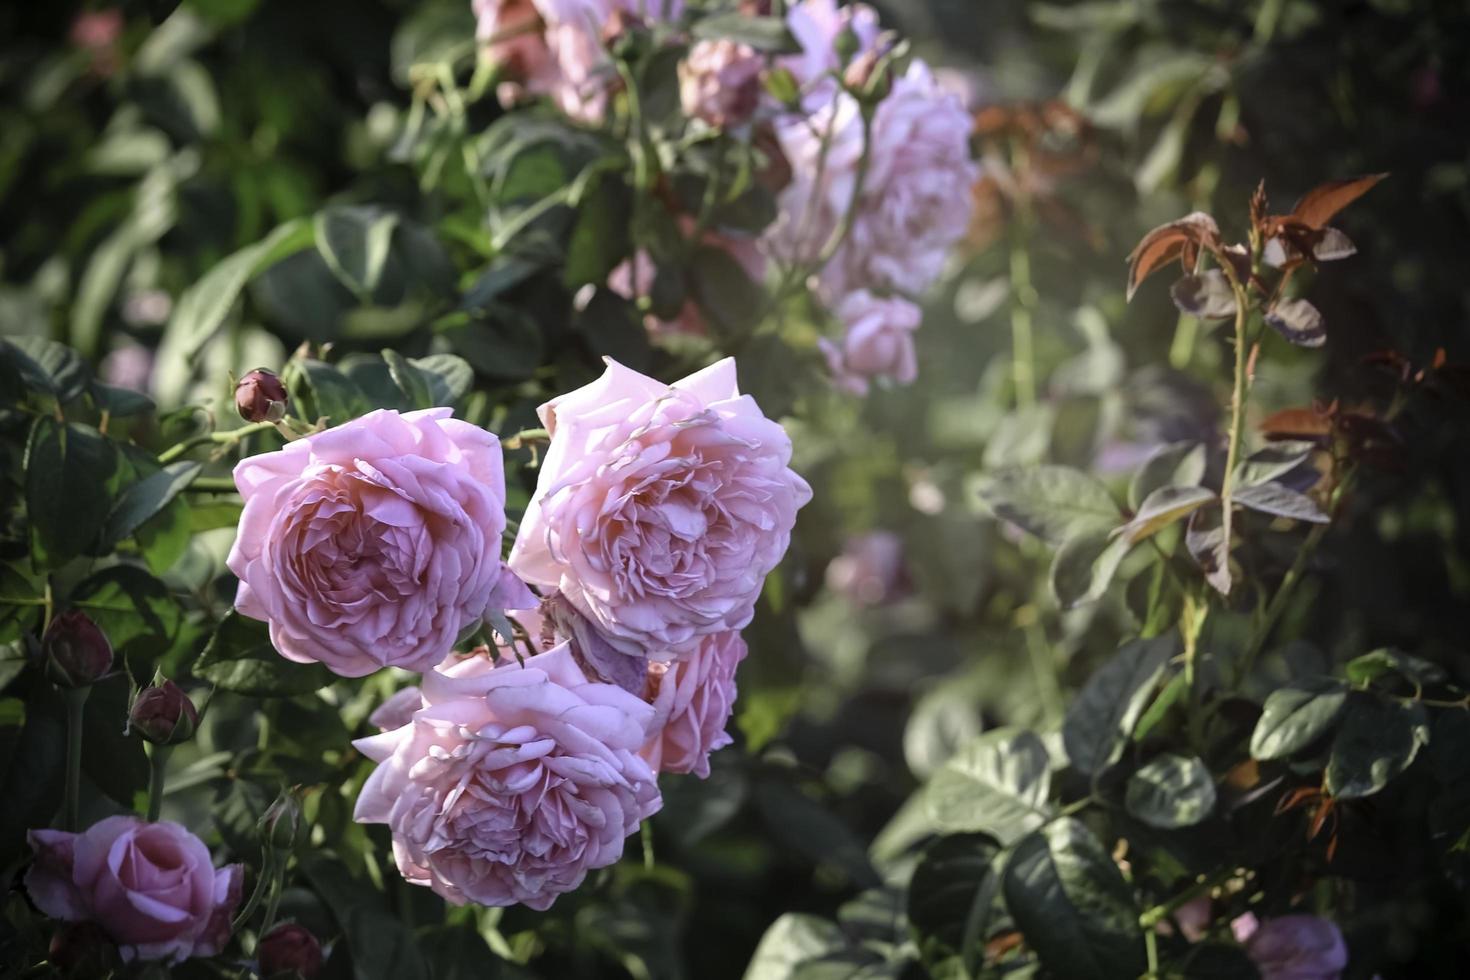 rosas inglesas cor de rosa florescendo no jardim de verão, uma das flores mais perfumadas, flor mais cheirosa, bonita e romântica foto